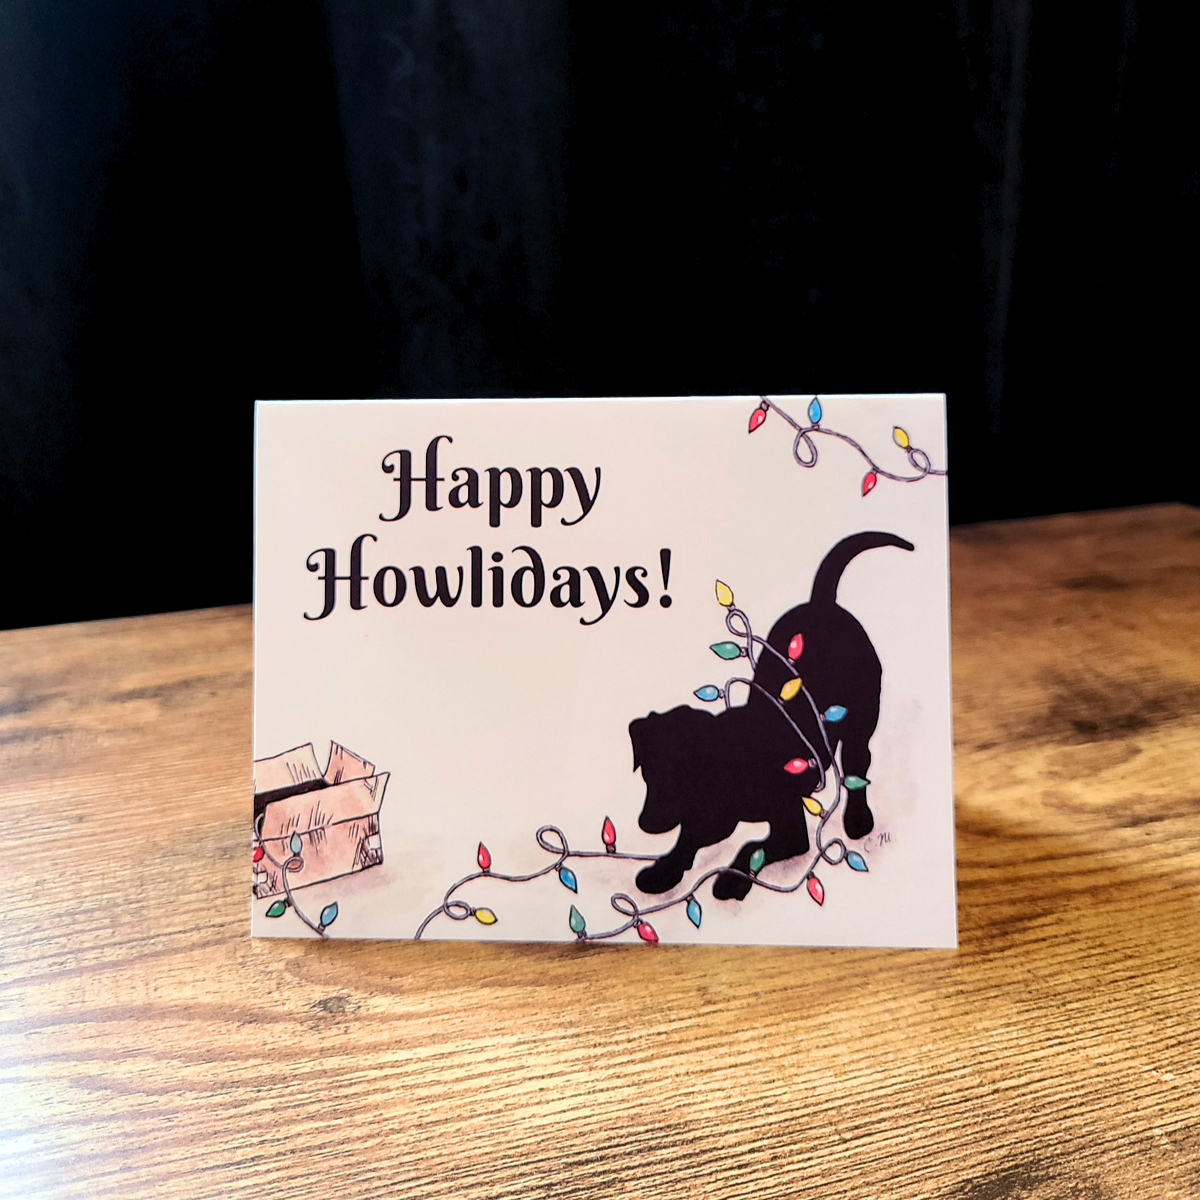 Happy Howlidays, Black lab Christmas card, Cute dog Christmas card, Happy Holidays card, Merry Christmas card, Festive dog card, black dog